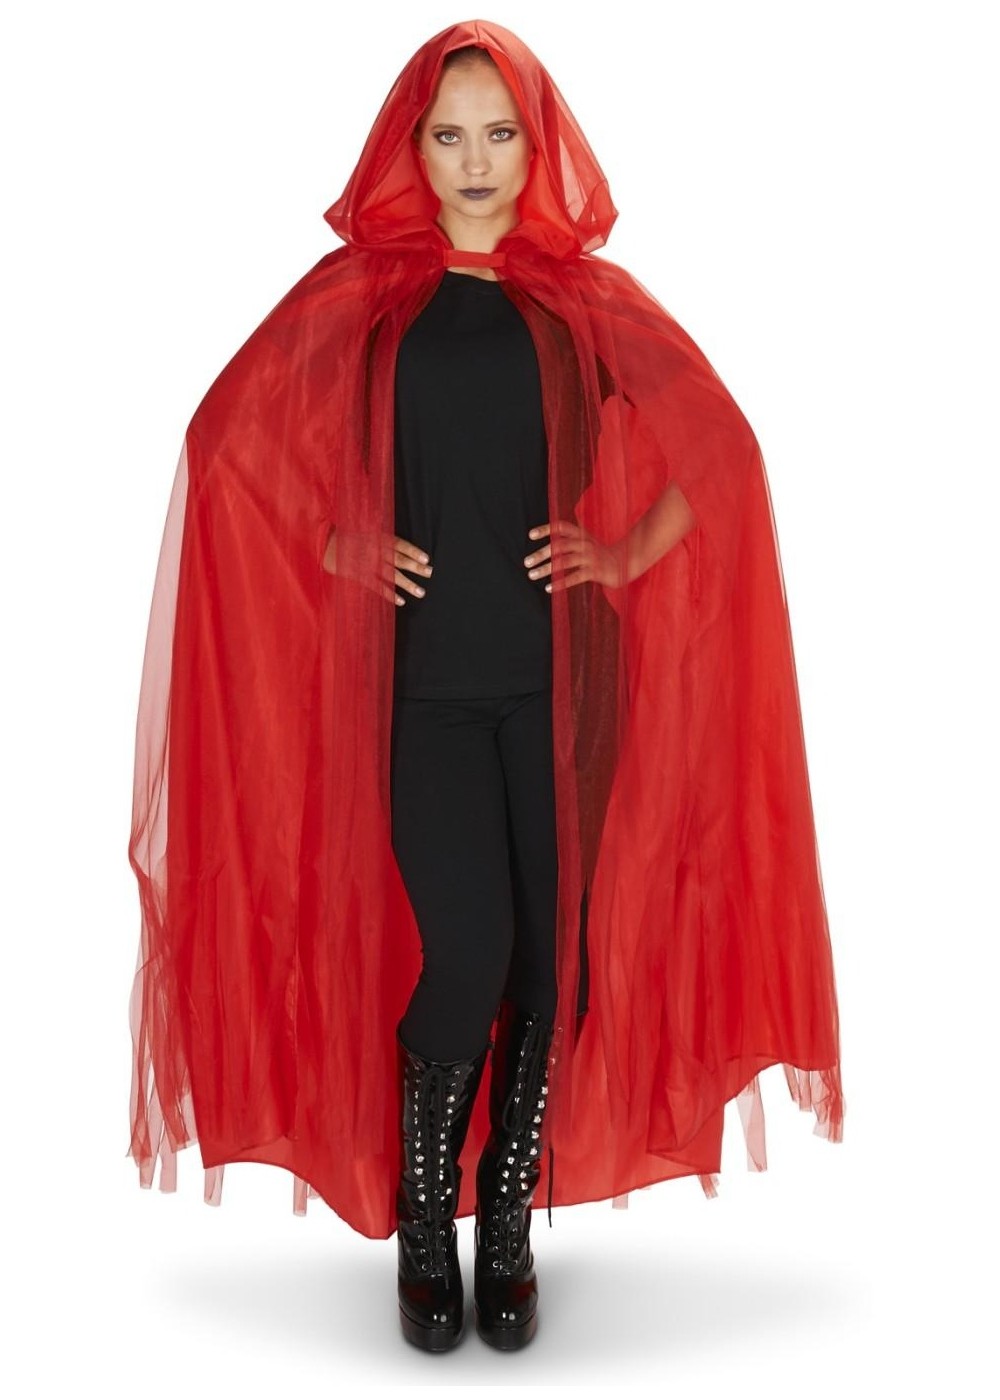 Red Hooded Womens Mesh Cloak